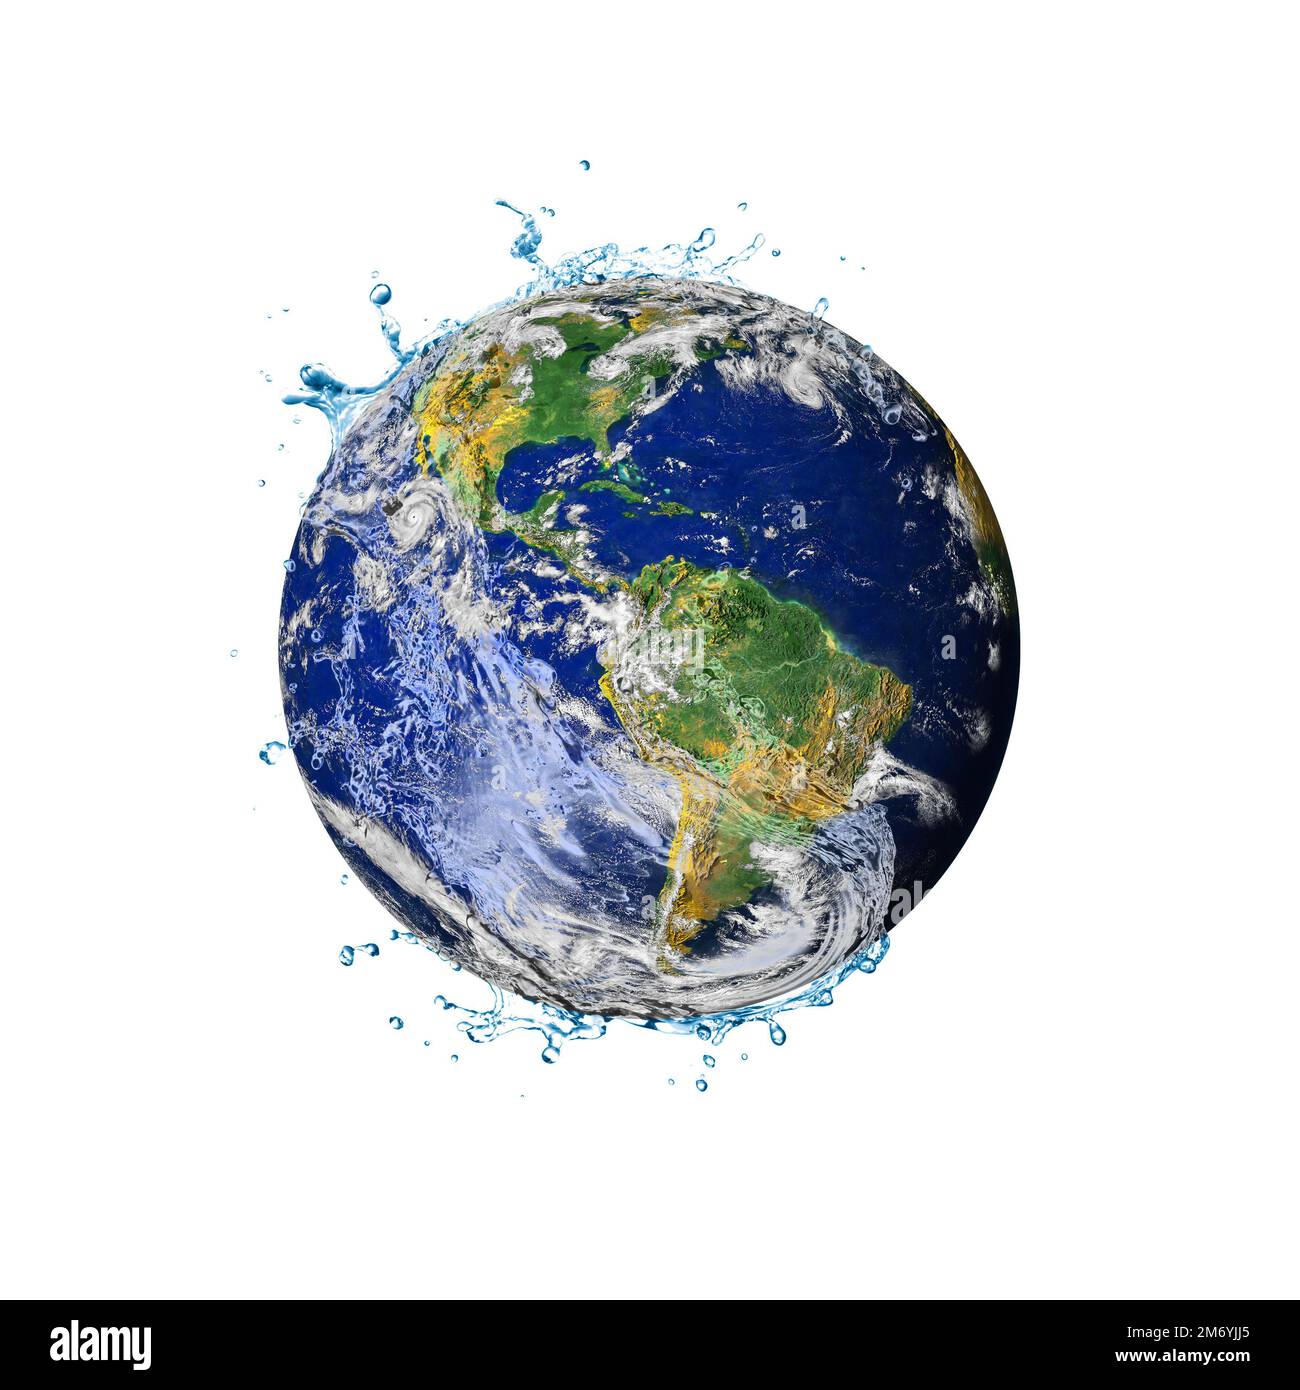 Recyclage de l'eau dans le monde. Concept de pénurie d'eau sur terre isolée sur fond blanc. Concept jour de la Terre ou Journée mondiale de l'eau. Éléments de cette image Banque D'Images